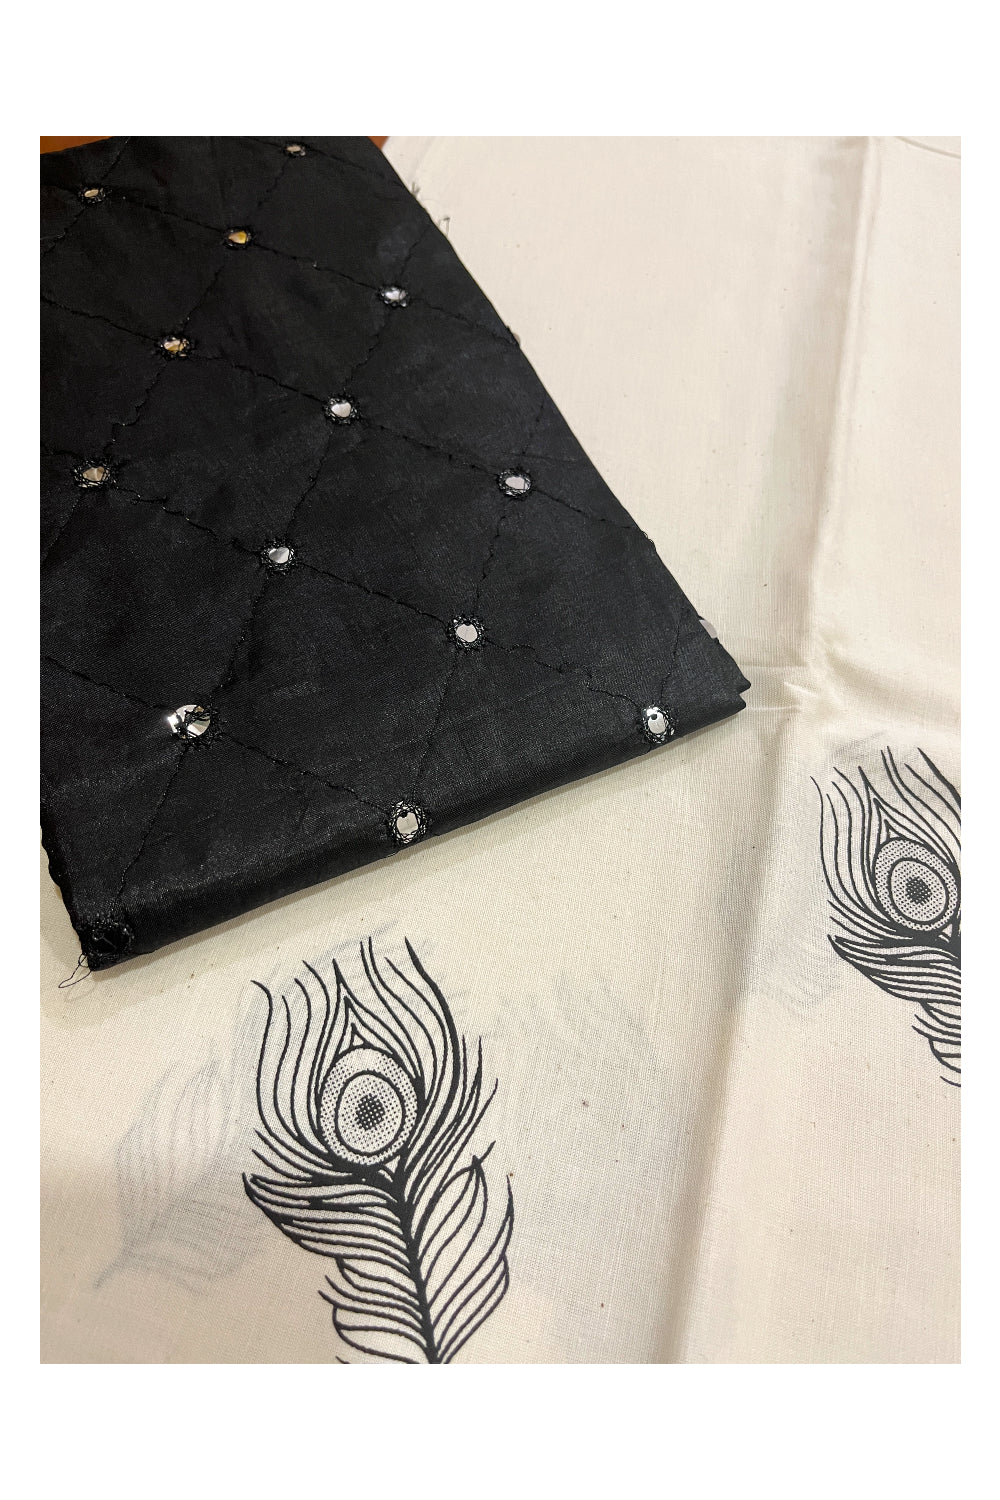 Kerala Cotton Block Printed Pavada and Black Designer Blouse Material for Kids/Girls 4.3 Meters